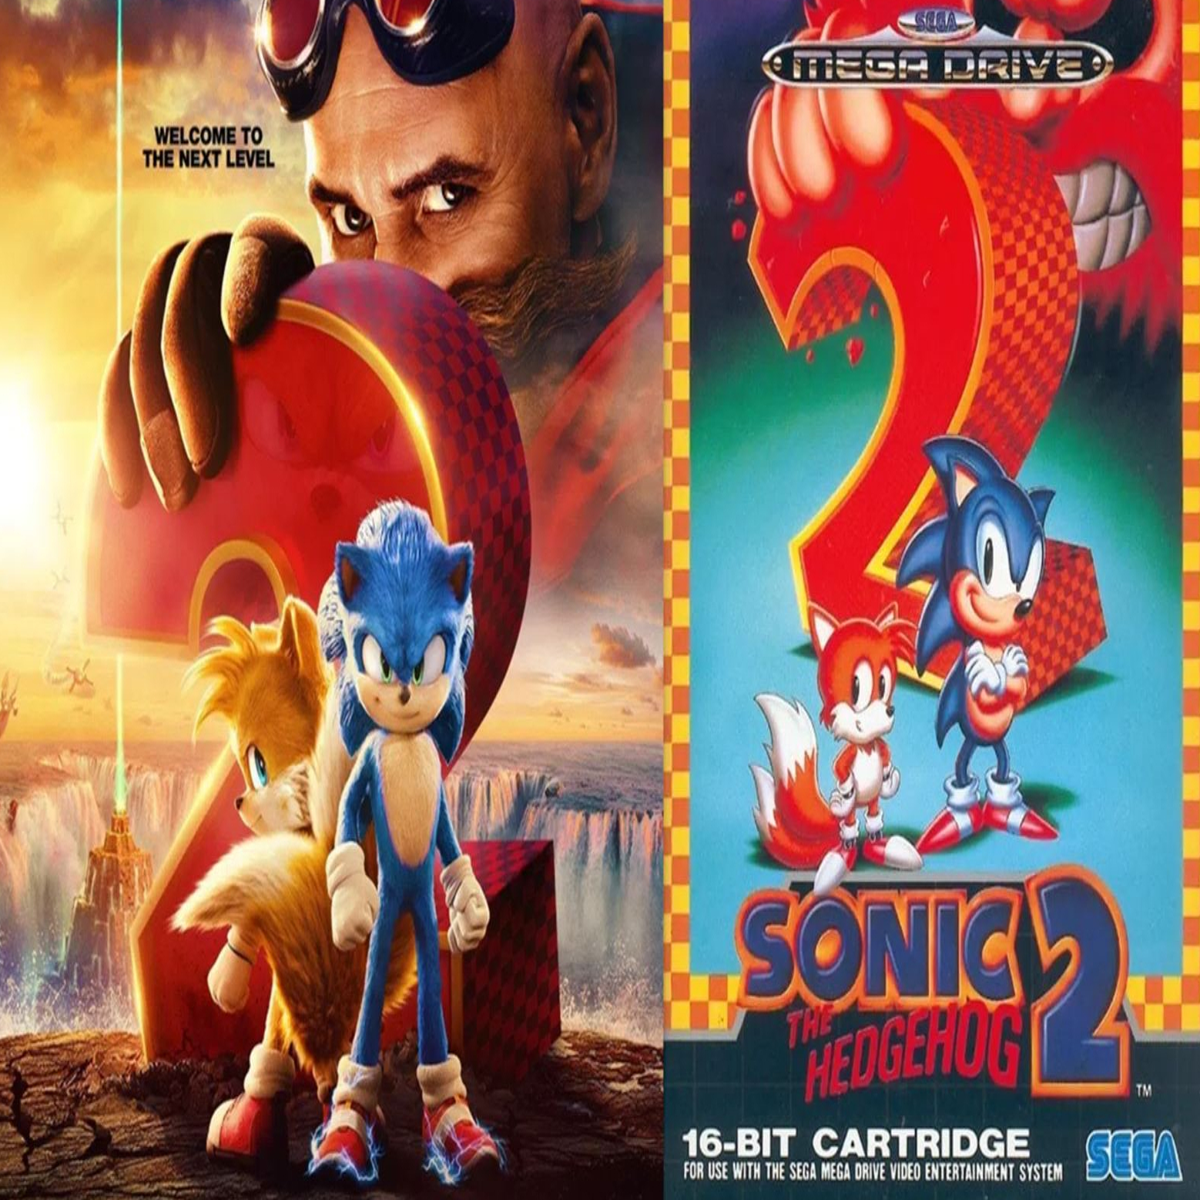 Anime4Play - Possível nova imagem do filme Sonic the